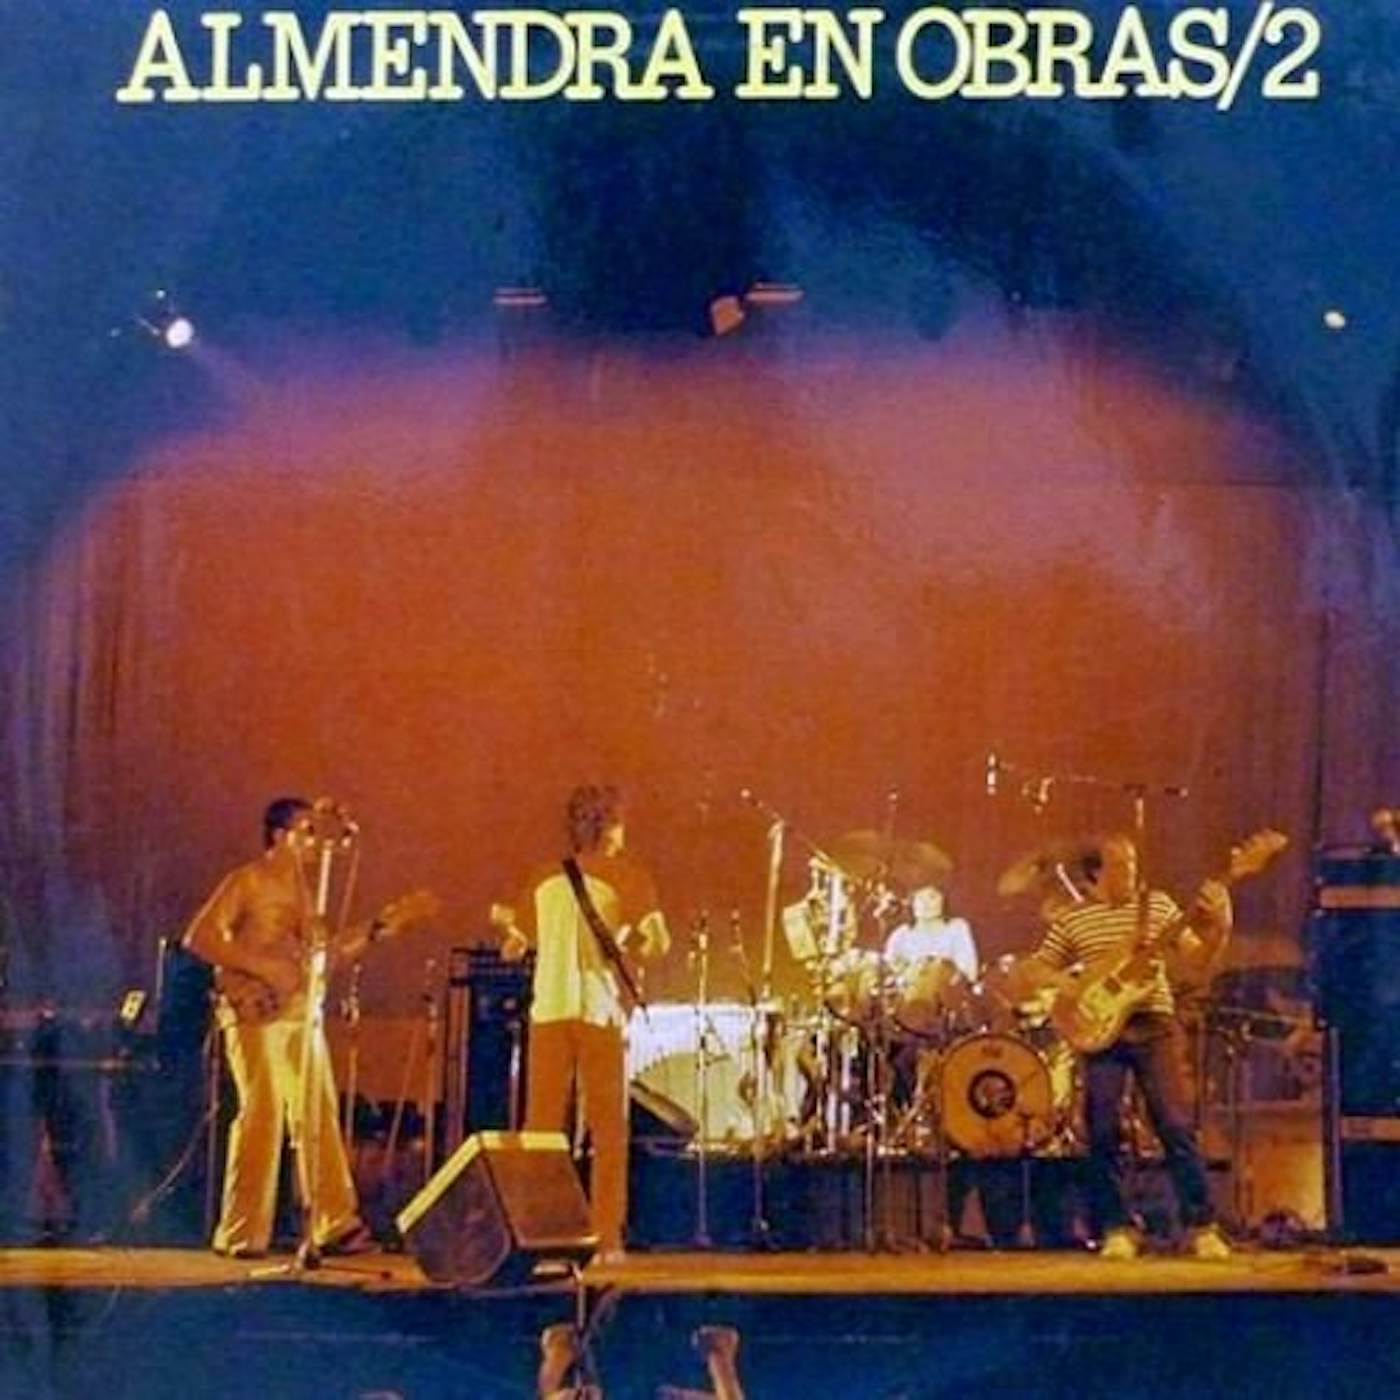 ALMENDRA EN OBRAS 2 Vinyl Record